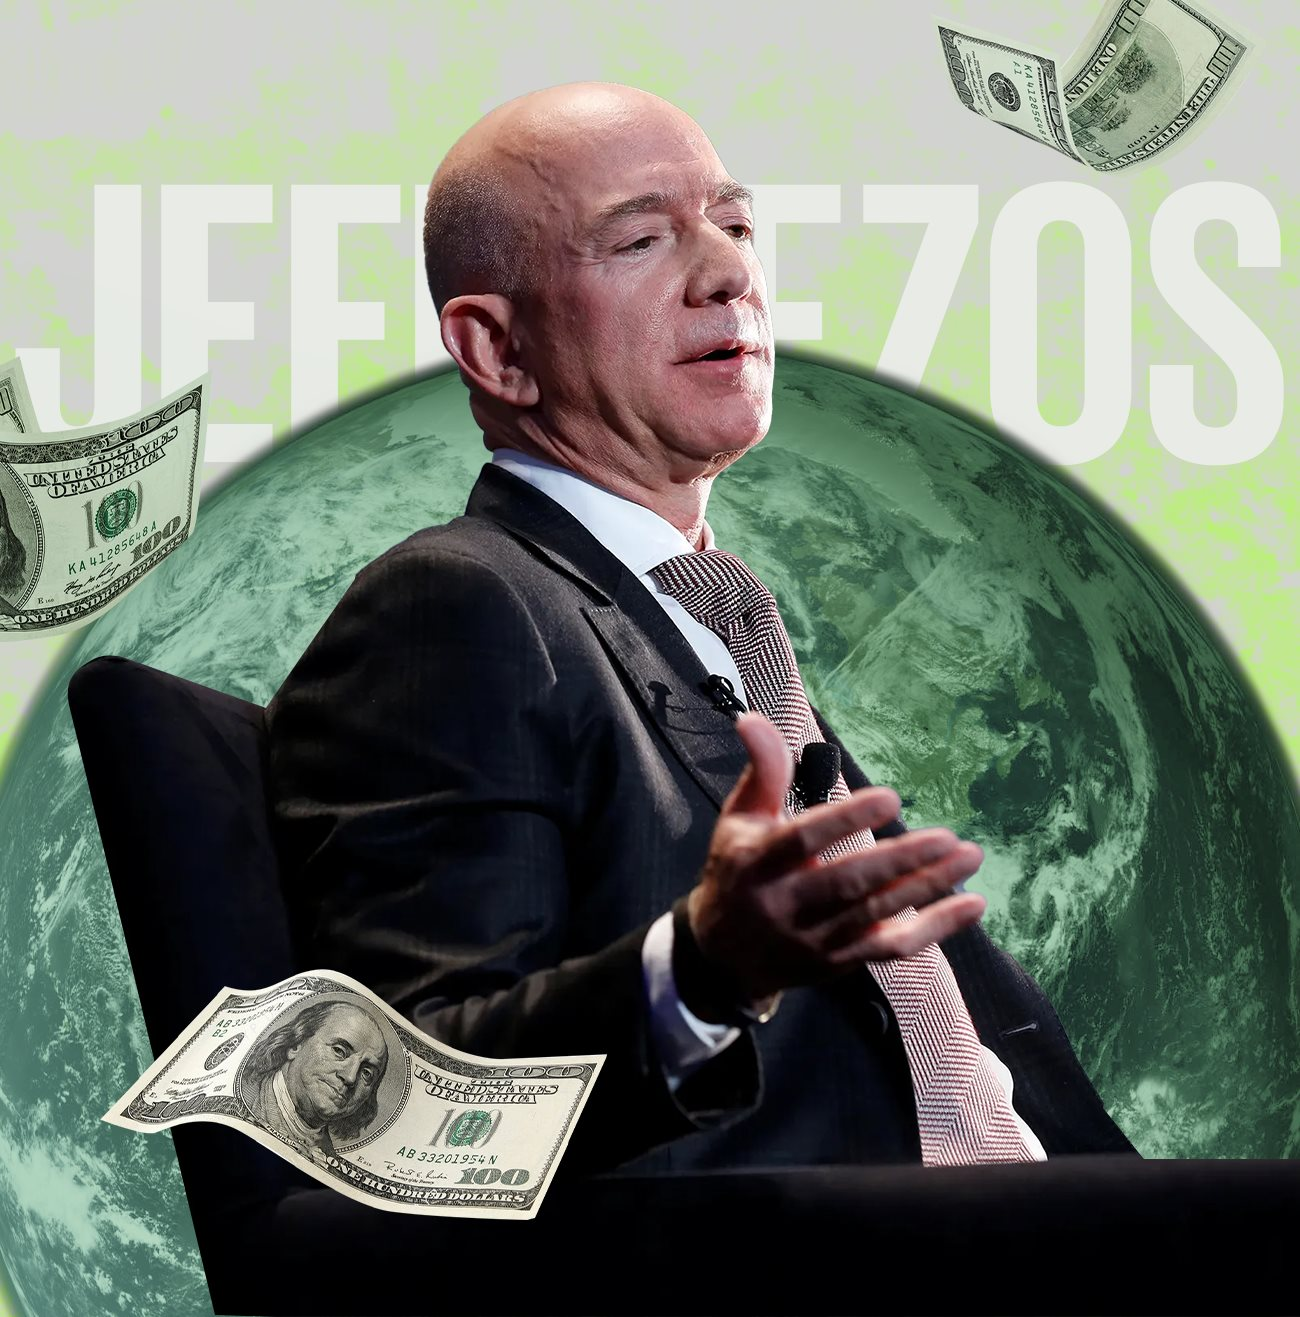 150 tỷ USD tiền từ thiện của Jeff Bezos: Đến từ mồ hôi nước mắt của nhân viên Amazon, cho đi chỉ vì sợ nhận chỉ trích? - Ảnh 5.